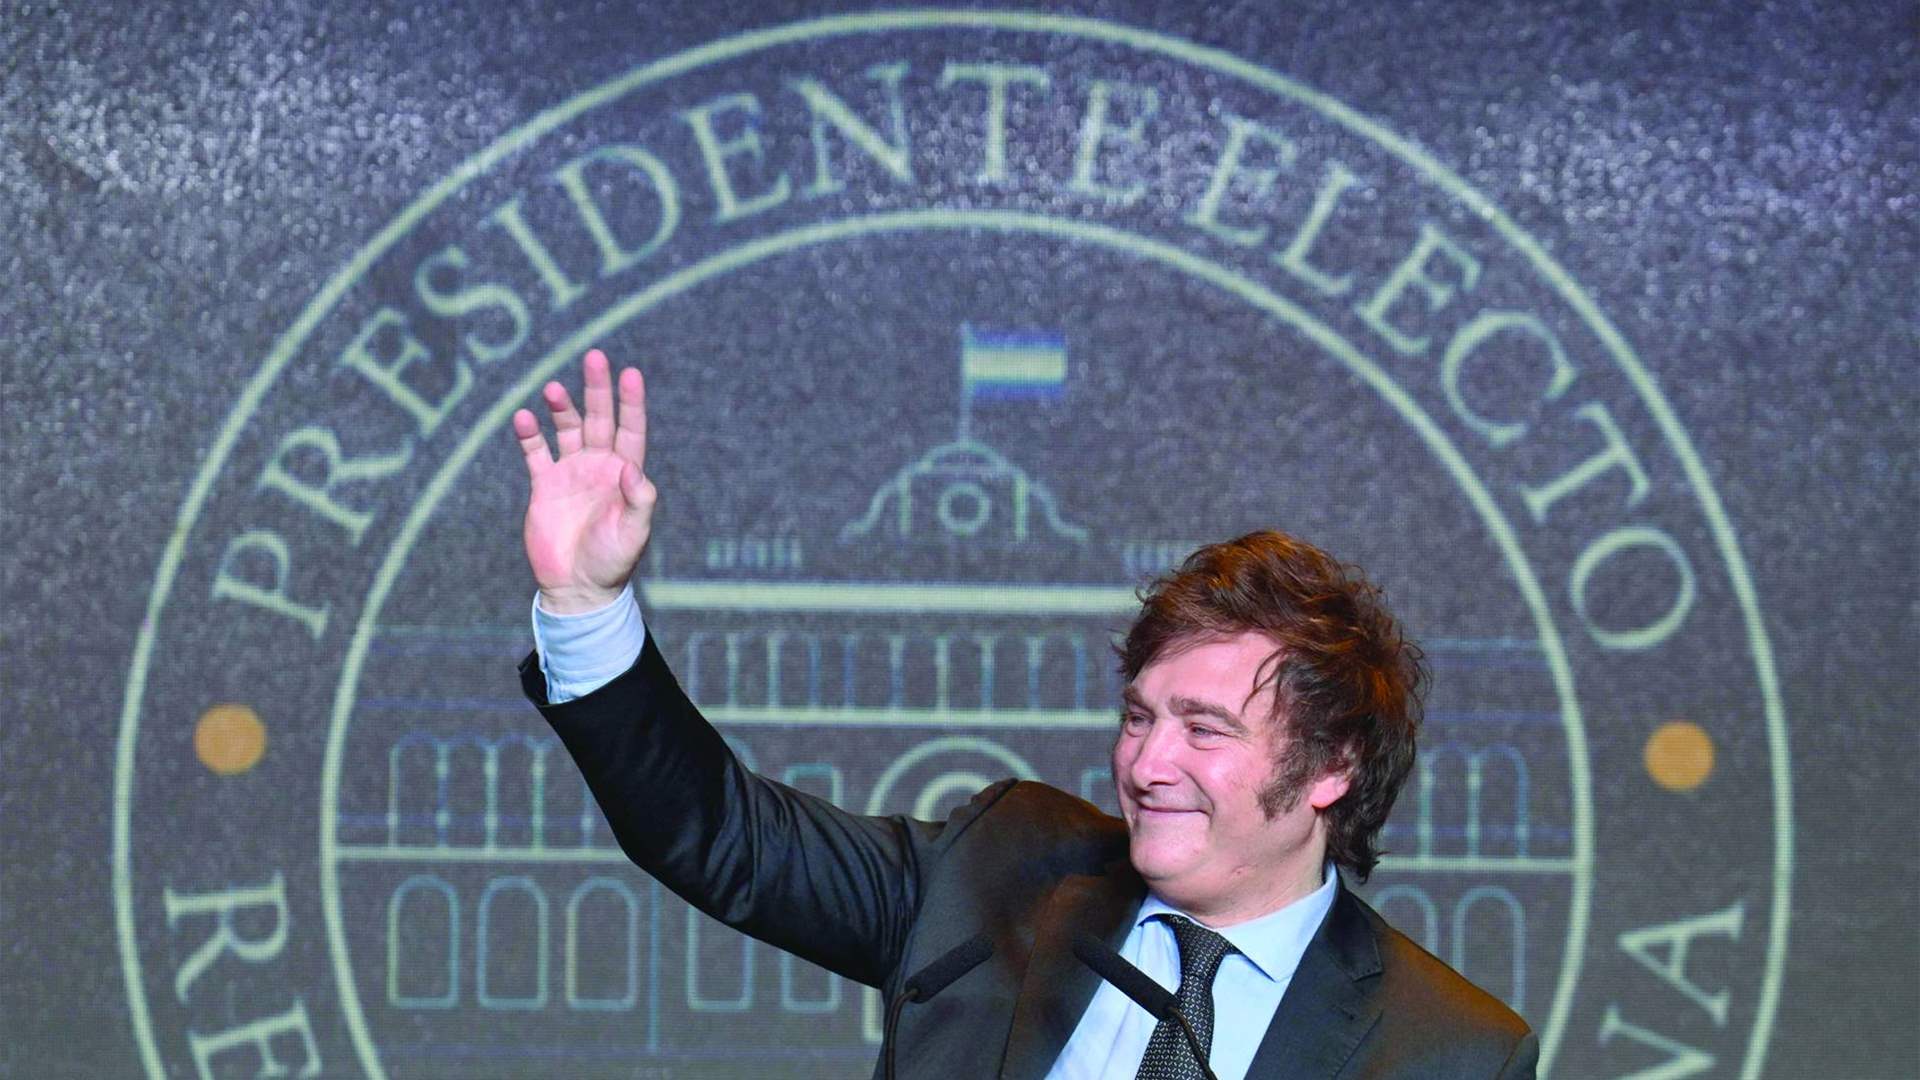 الرئيس الأرجنتيني المنتخب يتوجه إلى الولايات المتحدة للقاء مسؤولين في الإدارة الأميركية وصندوق النقد